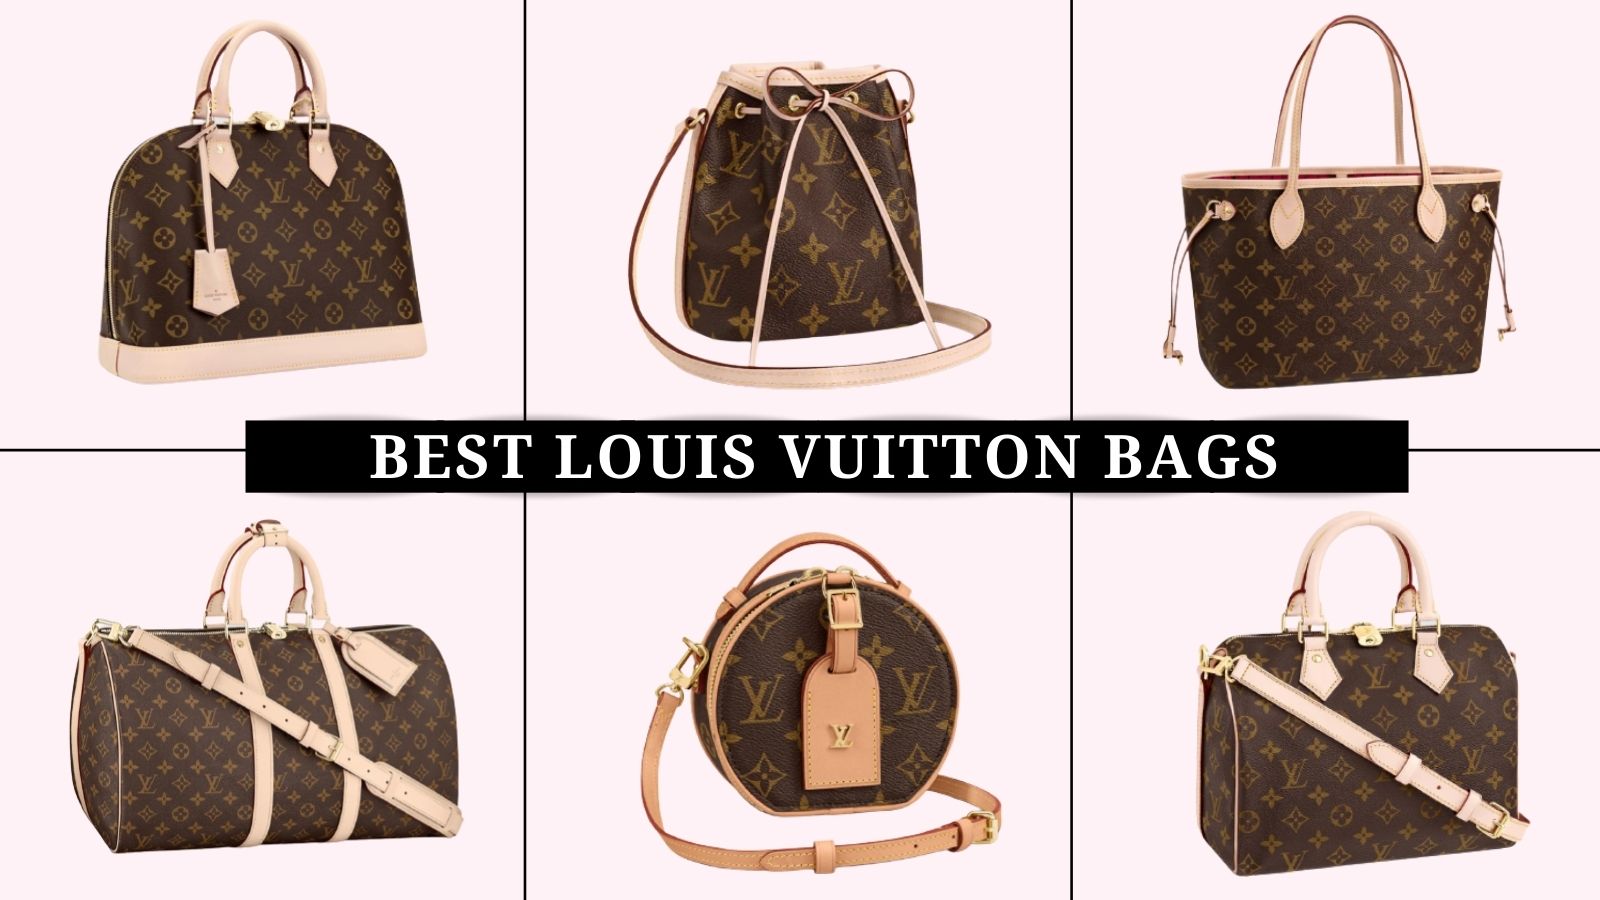 Top 10 Classic Louis Vuitton Handbags - FifthAvenueGirl.com